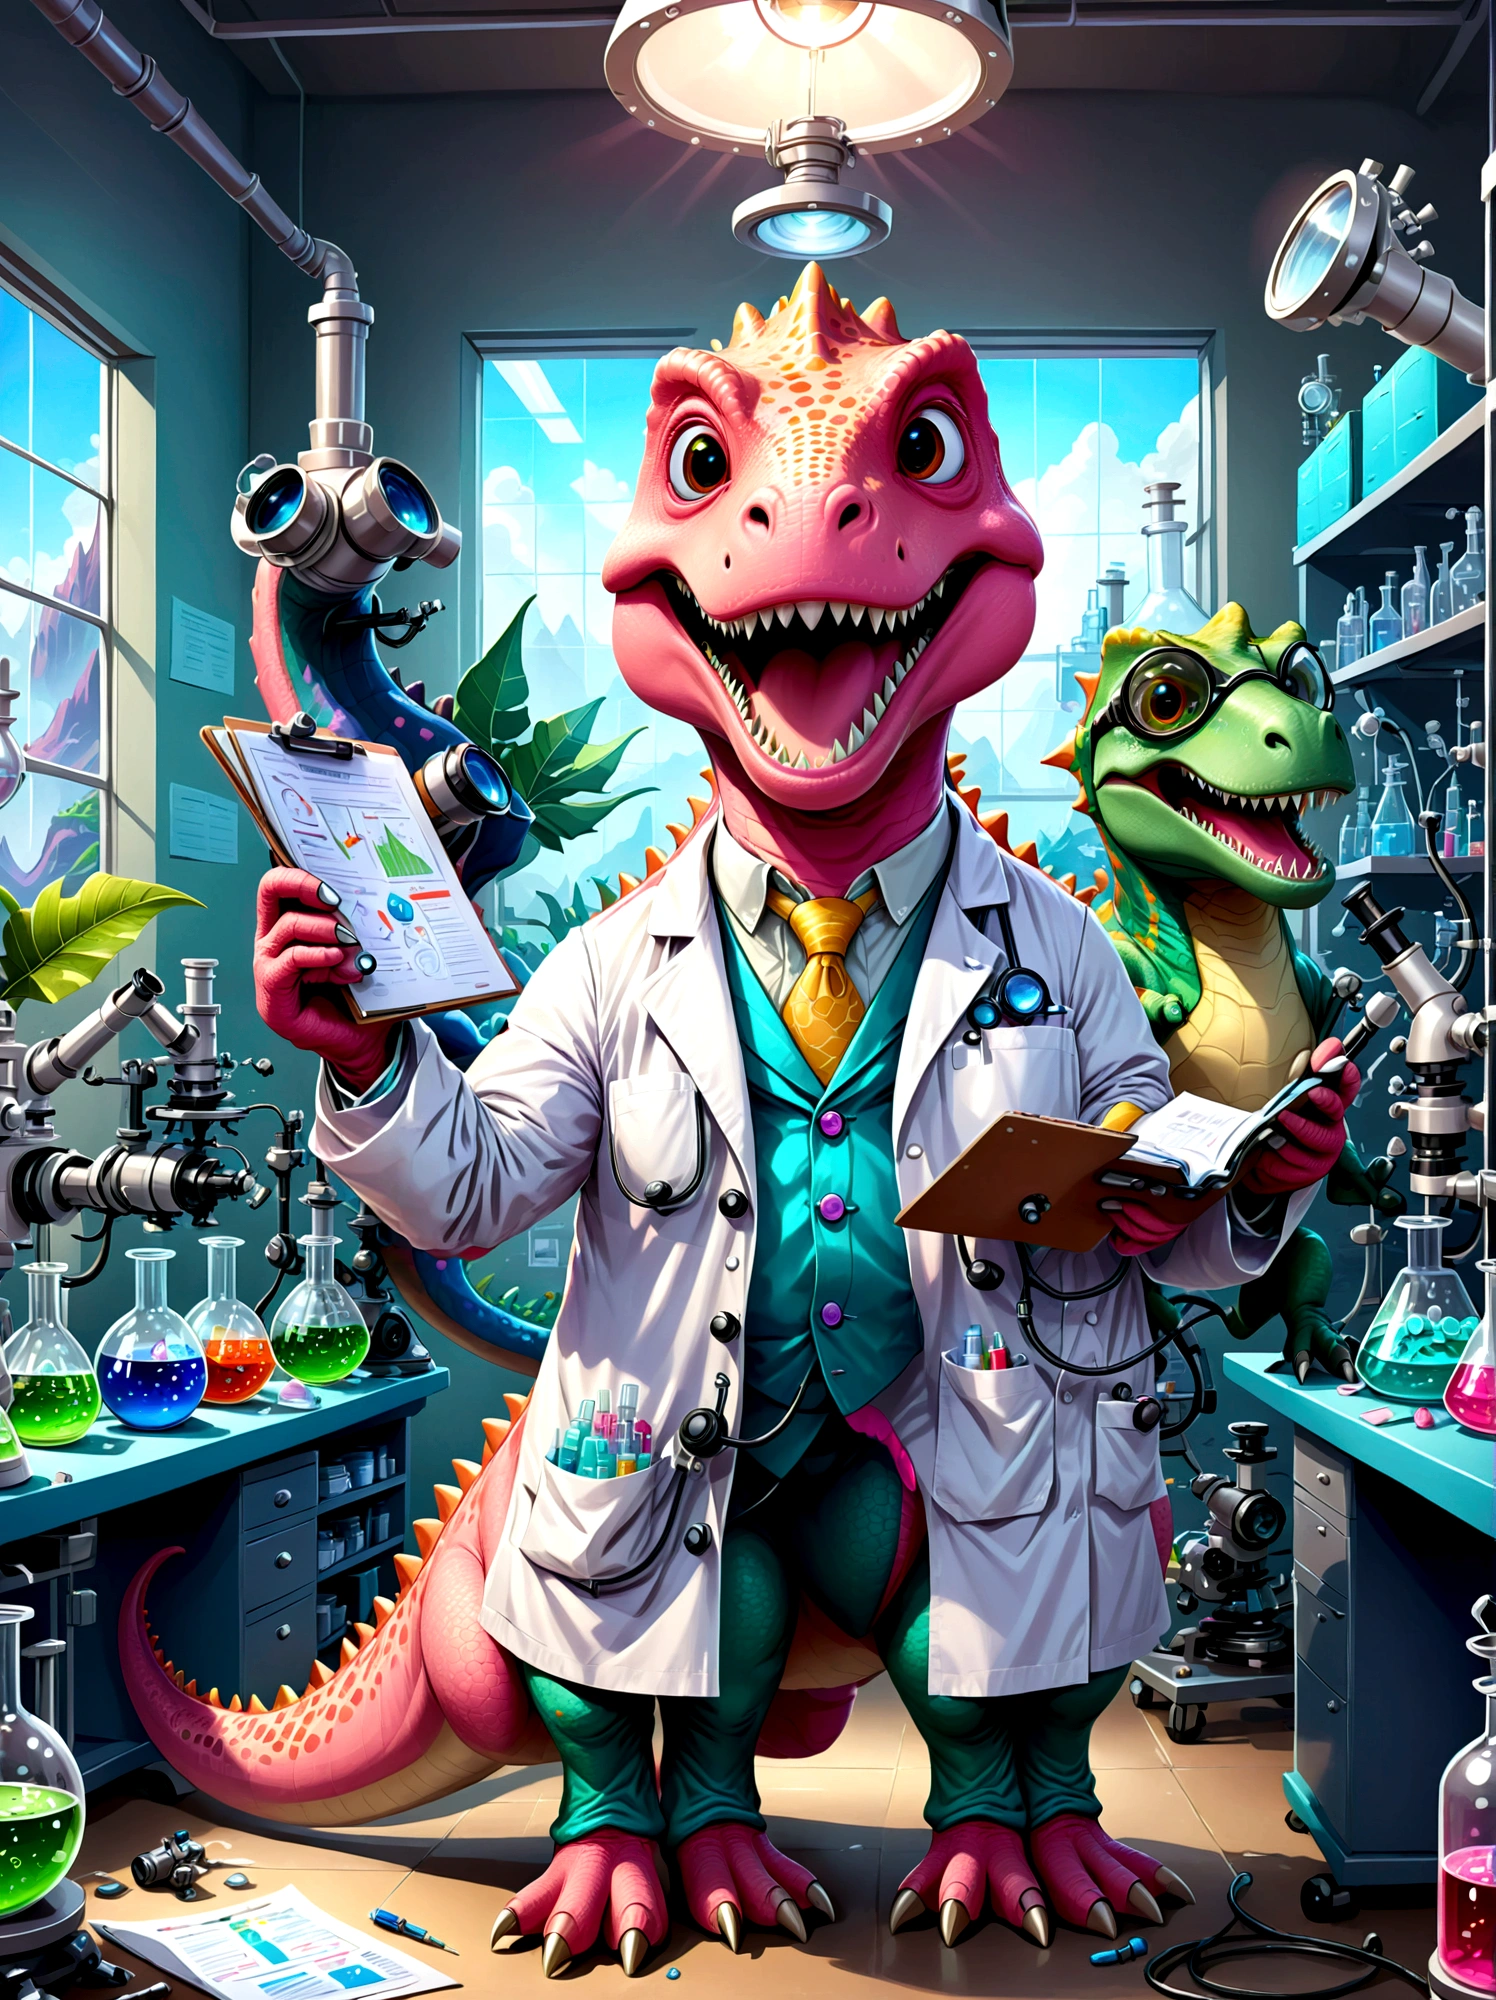 Ein rosa Dinosaurier-Charakter mit einem breiten, Breites Lächeln, als Forscher verkleidet, Sie sind in einem Labor, umgeben von wissenschaftlichen Geräten wie Mikroskopen, Becher, Diagramme und Grafiken. Der Dinosaurier trägt einen Laborkittel, Augenschutz, und hält ein Klemmbrett in der Hand, Papiere liegen verstreut herum, weist auf einen arbeitsreichen Tag hin, Die Laborumgebung ist mit Licht aus Leuchtstofflampen über der Decke gefüllt, Illustrieren Sie dies im Cartoon-Stil